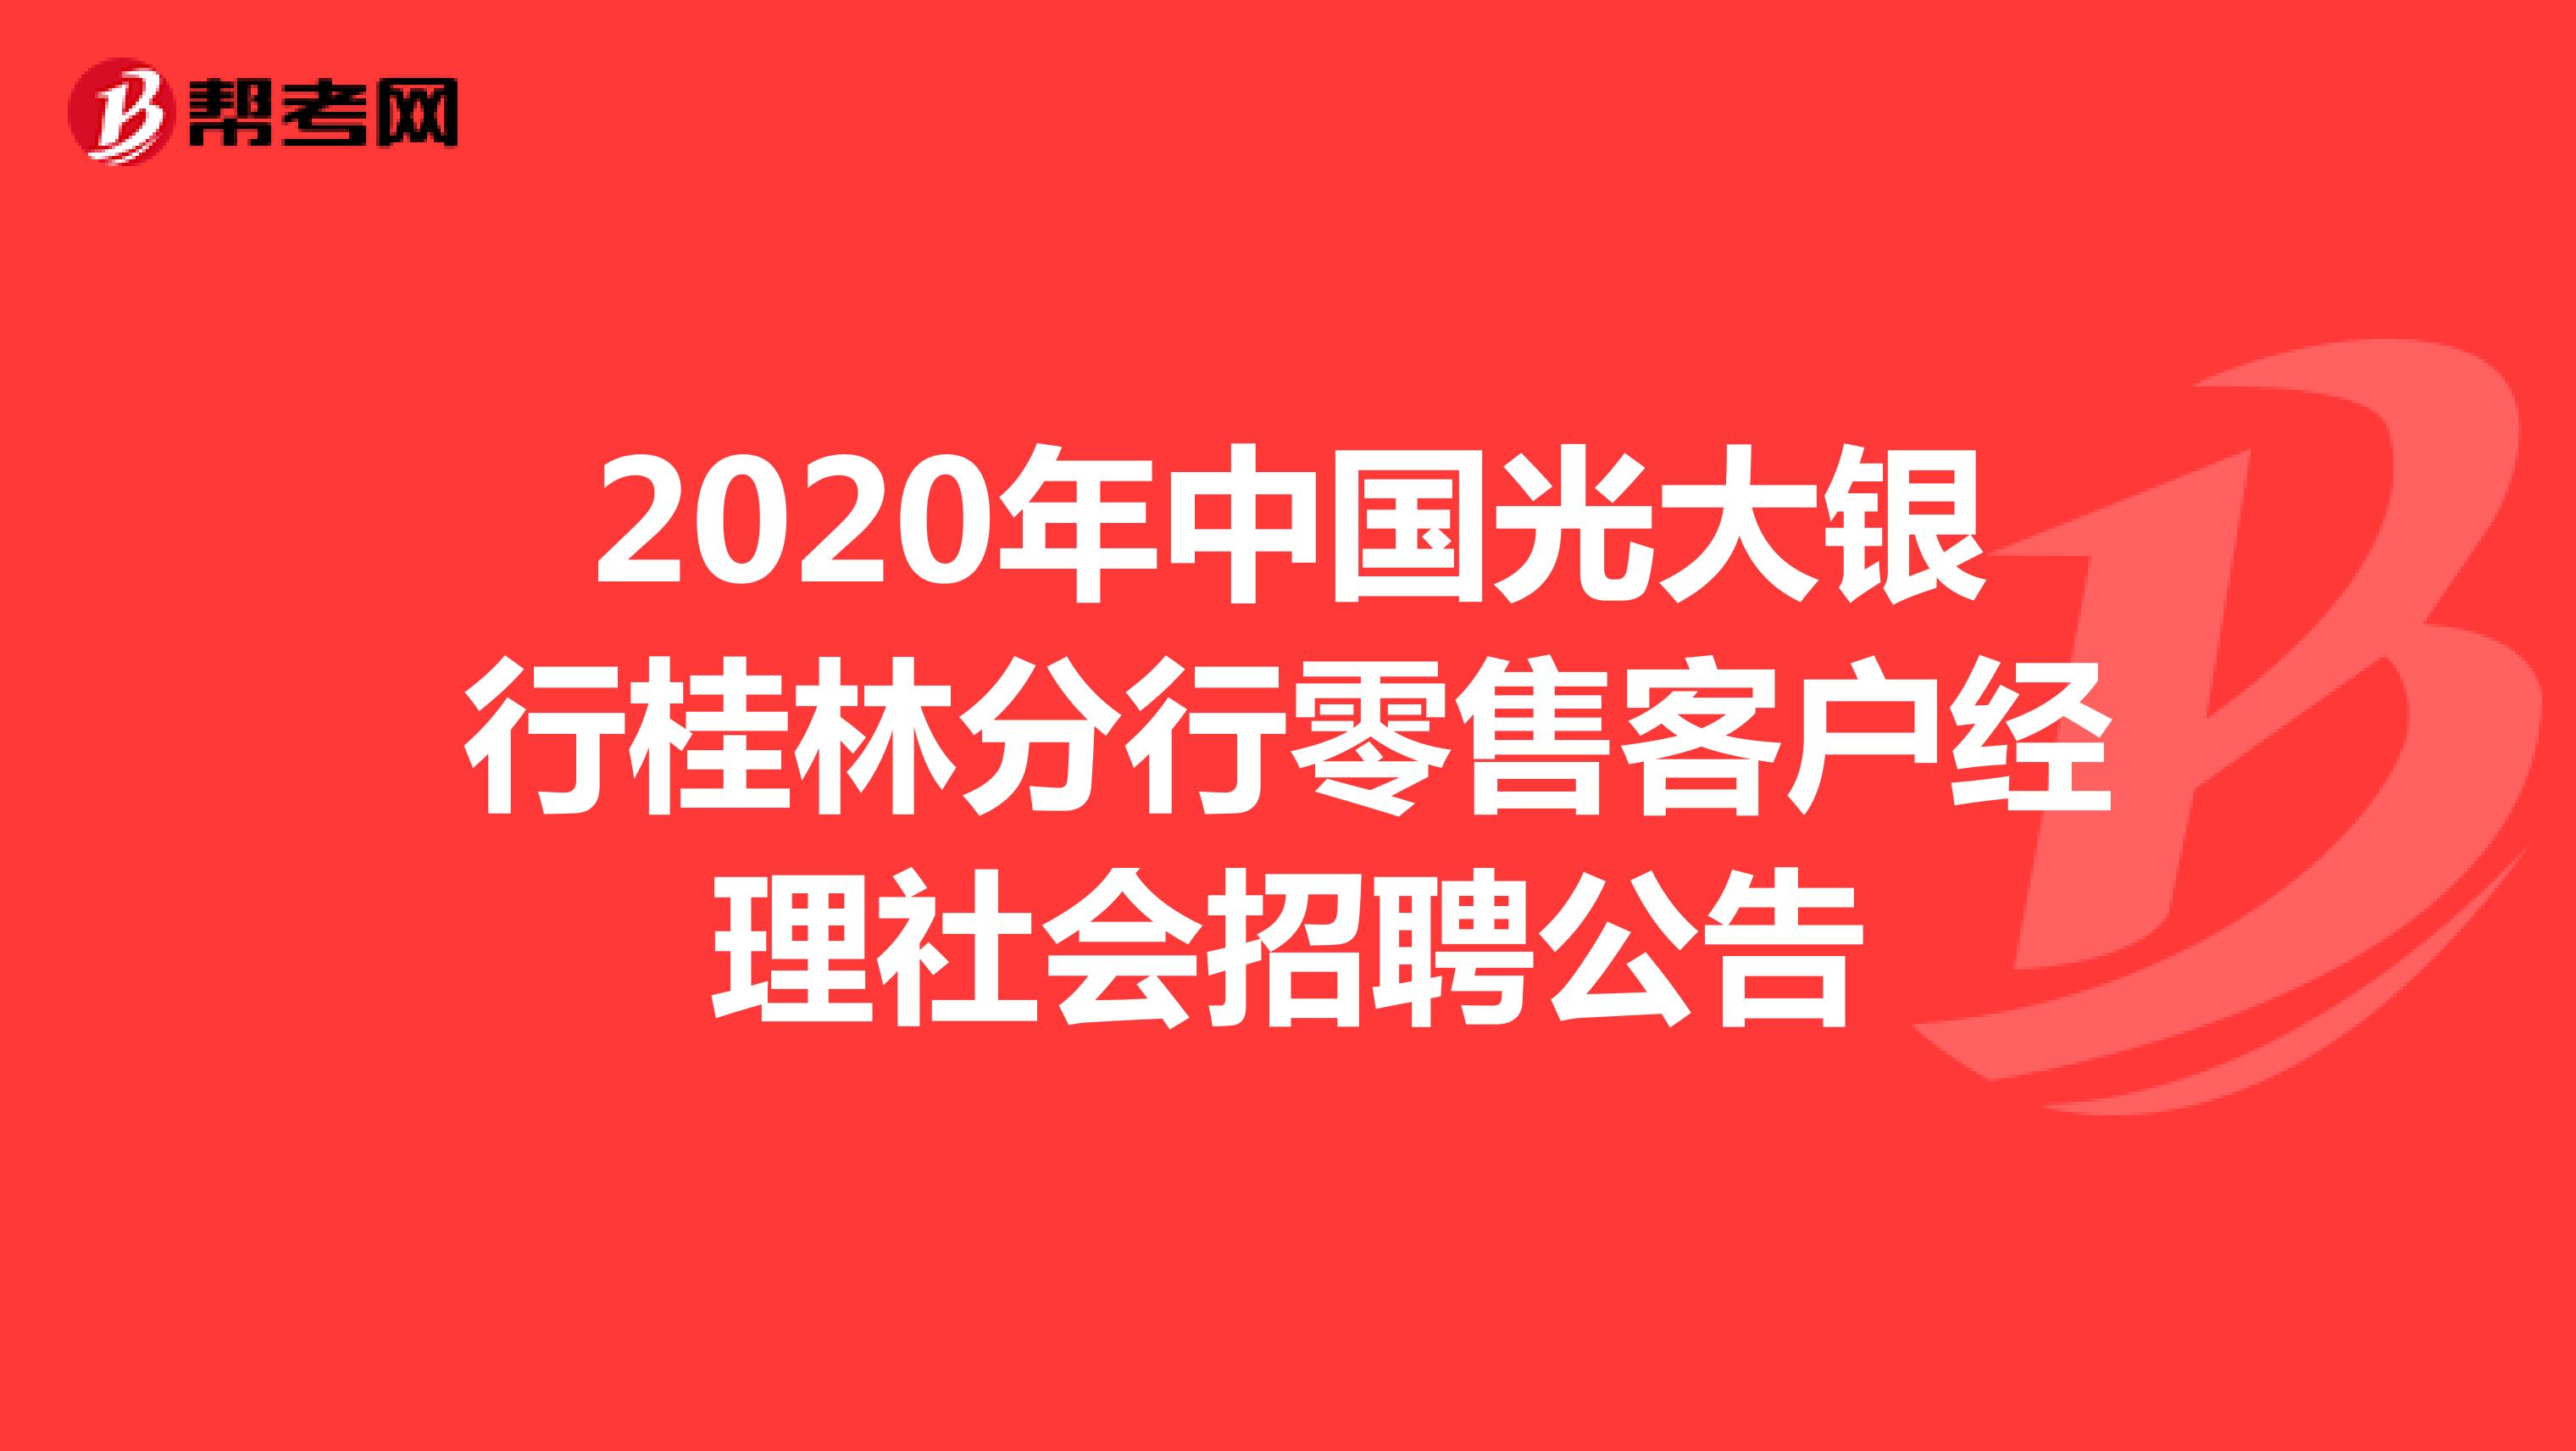 2020年中国光大银行桂林分行零售客户经理社会招聘公告